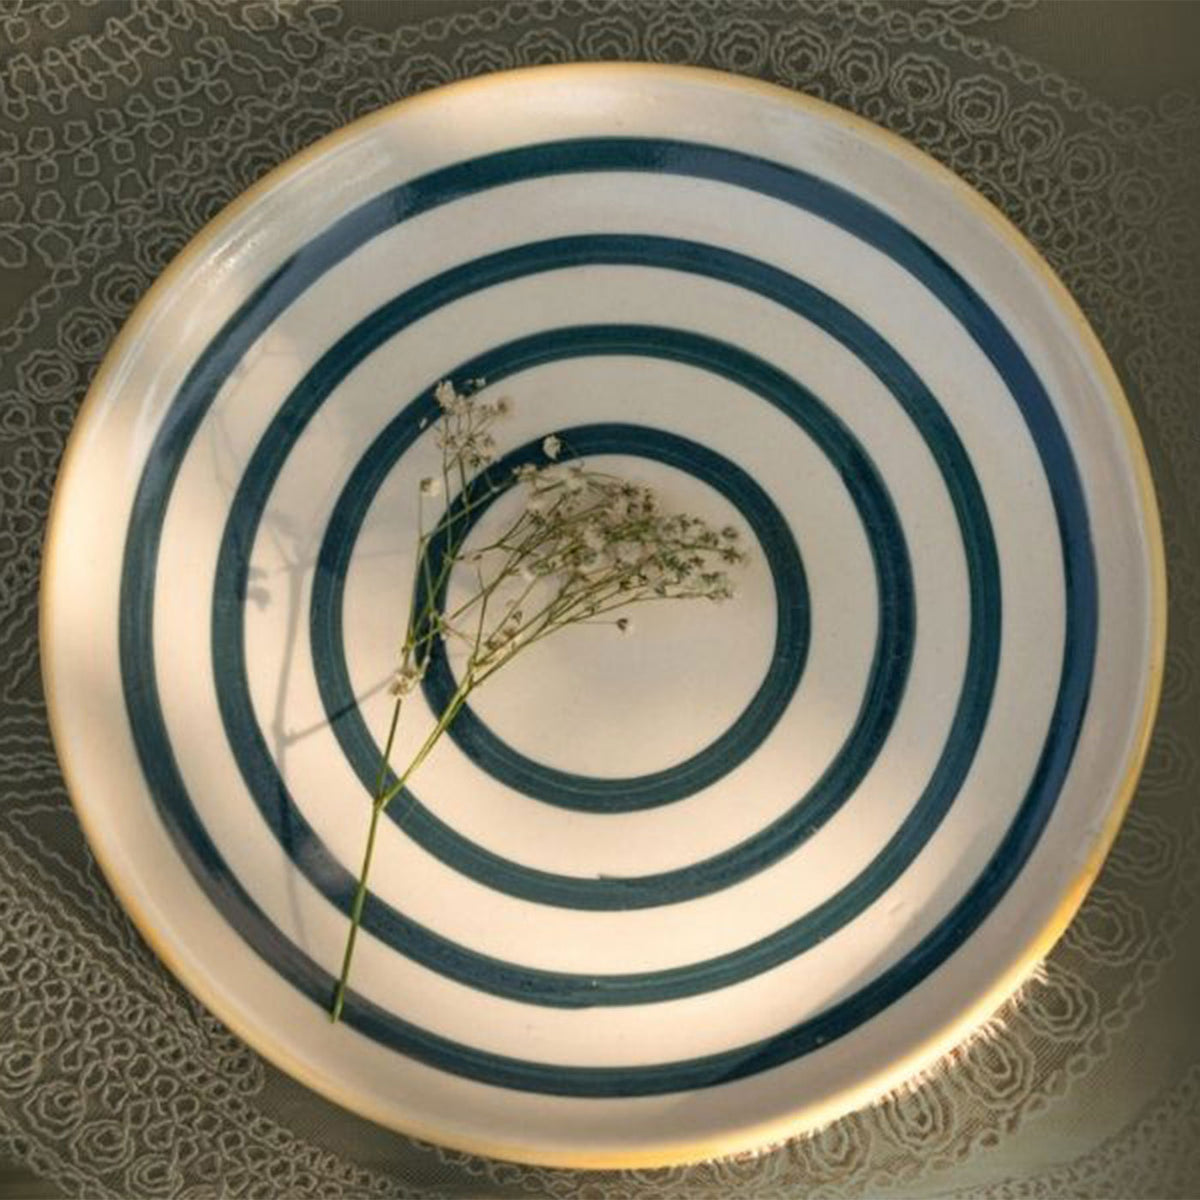 Circular rhythmic dinner plate